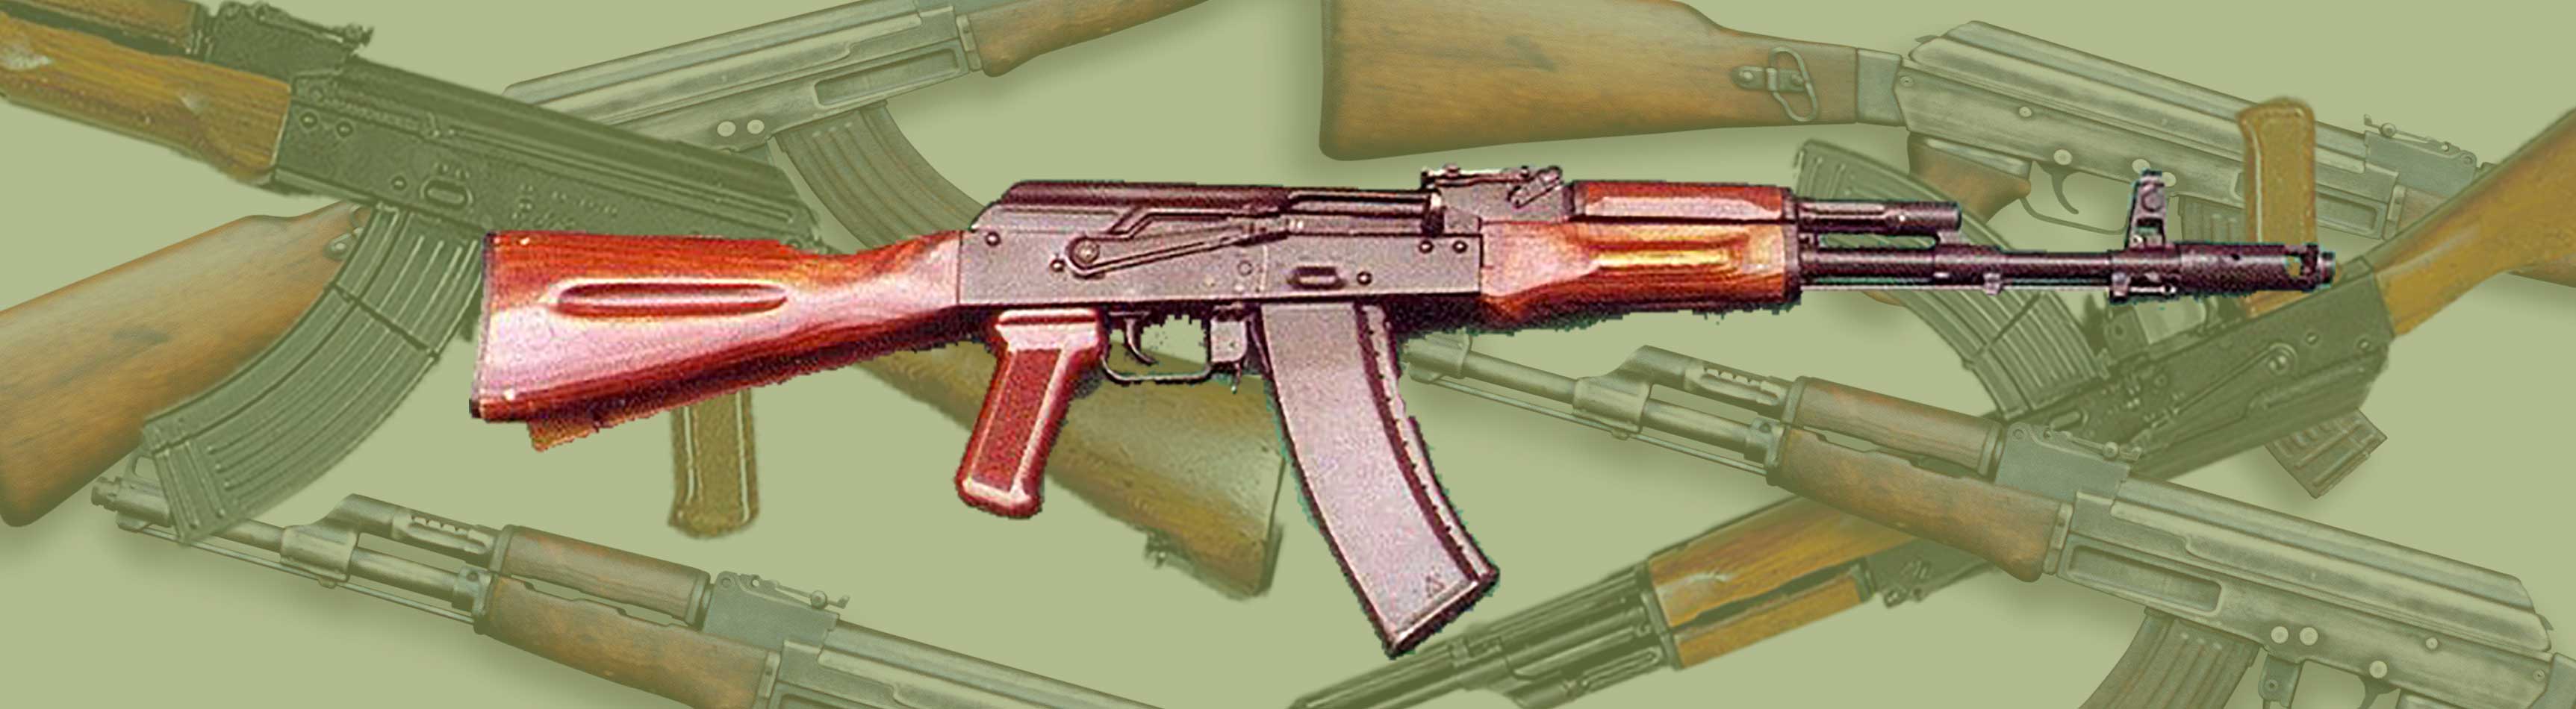 Ak74 bb gun